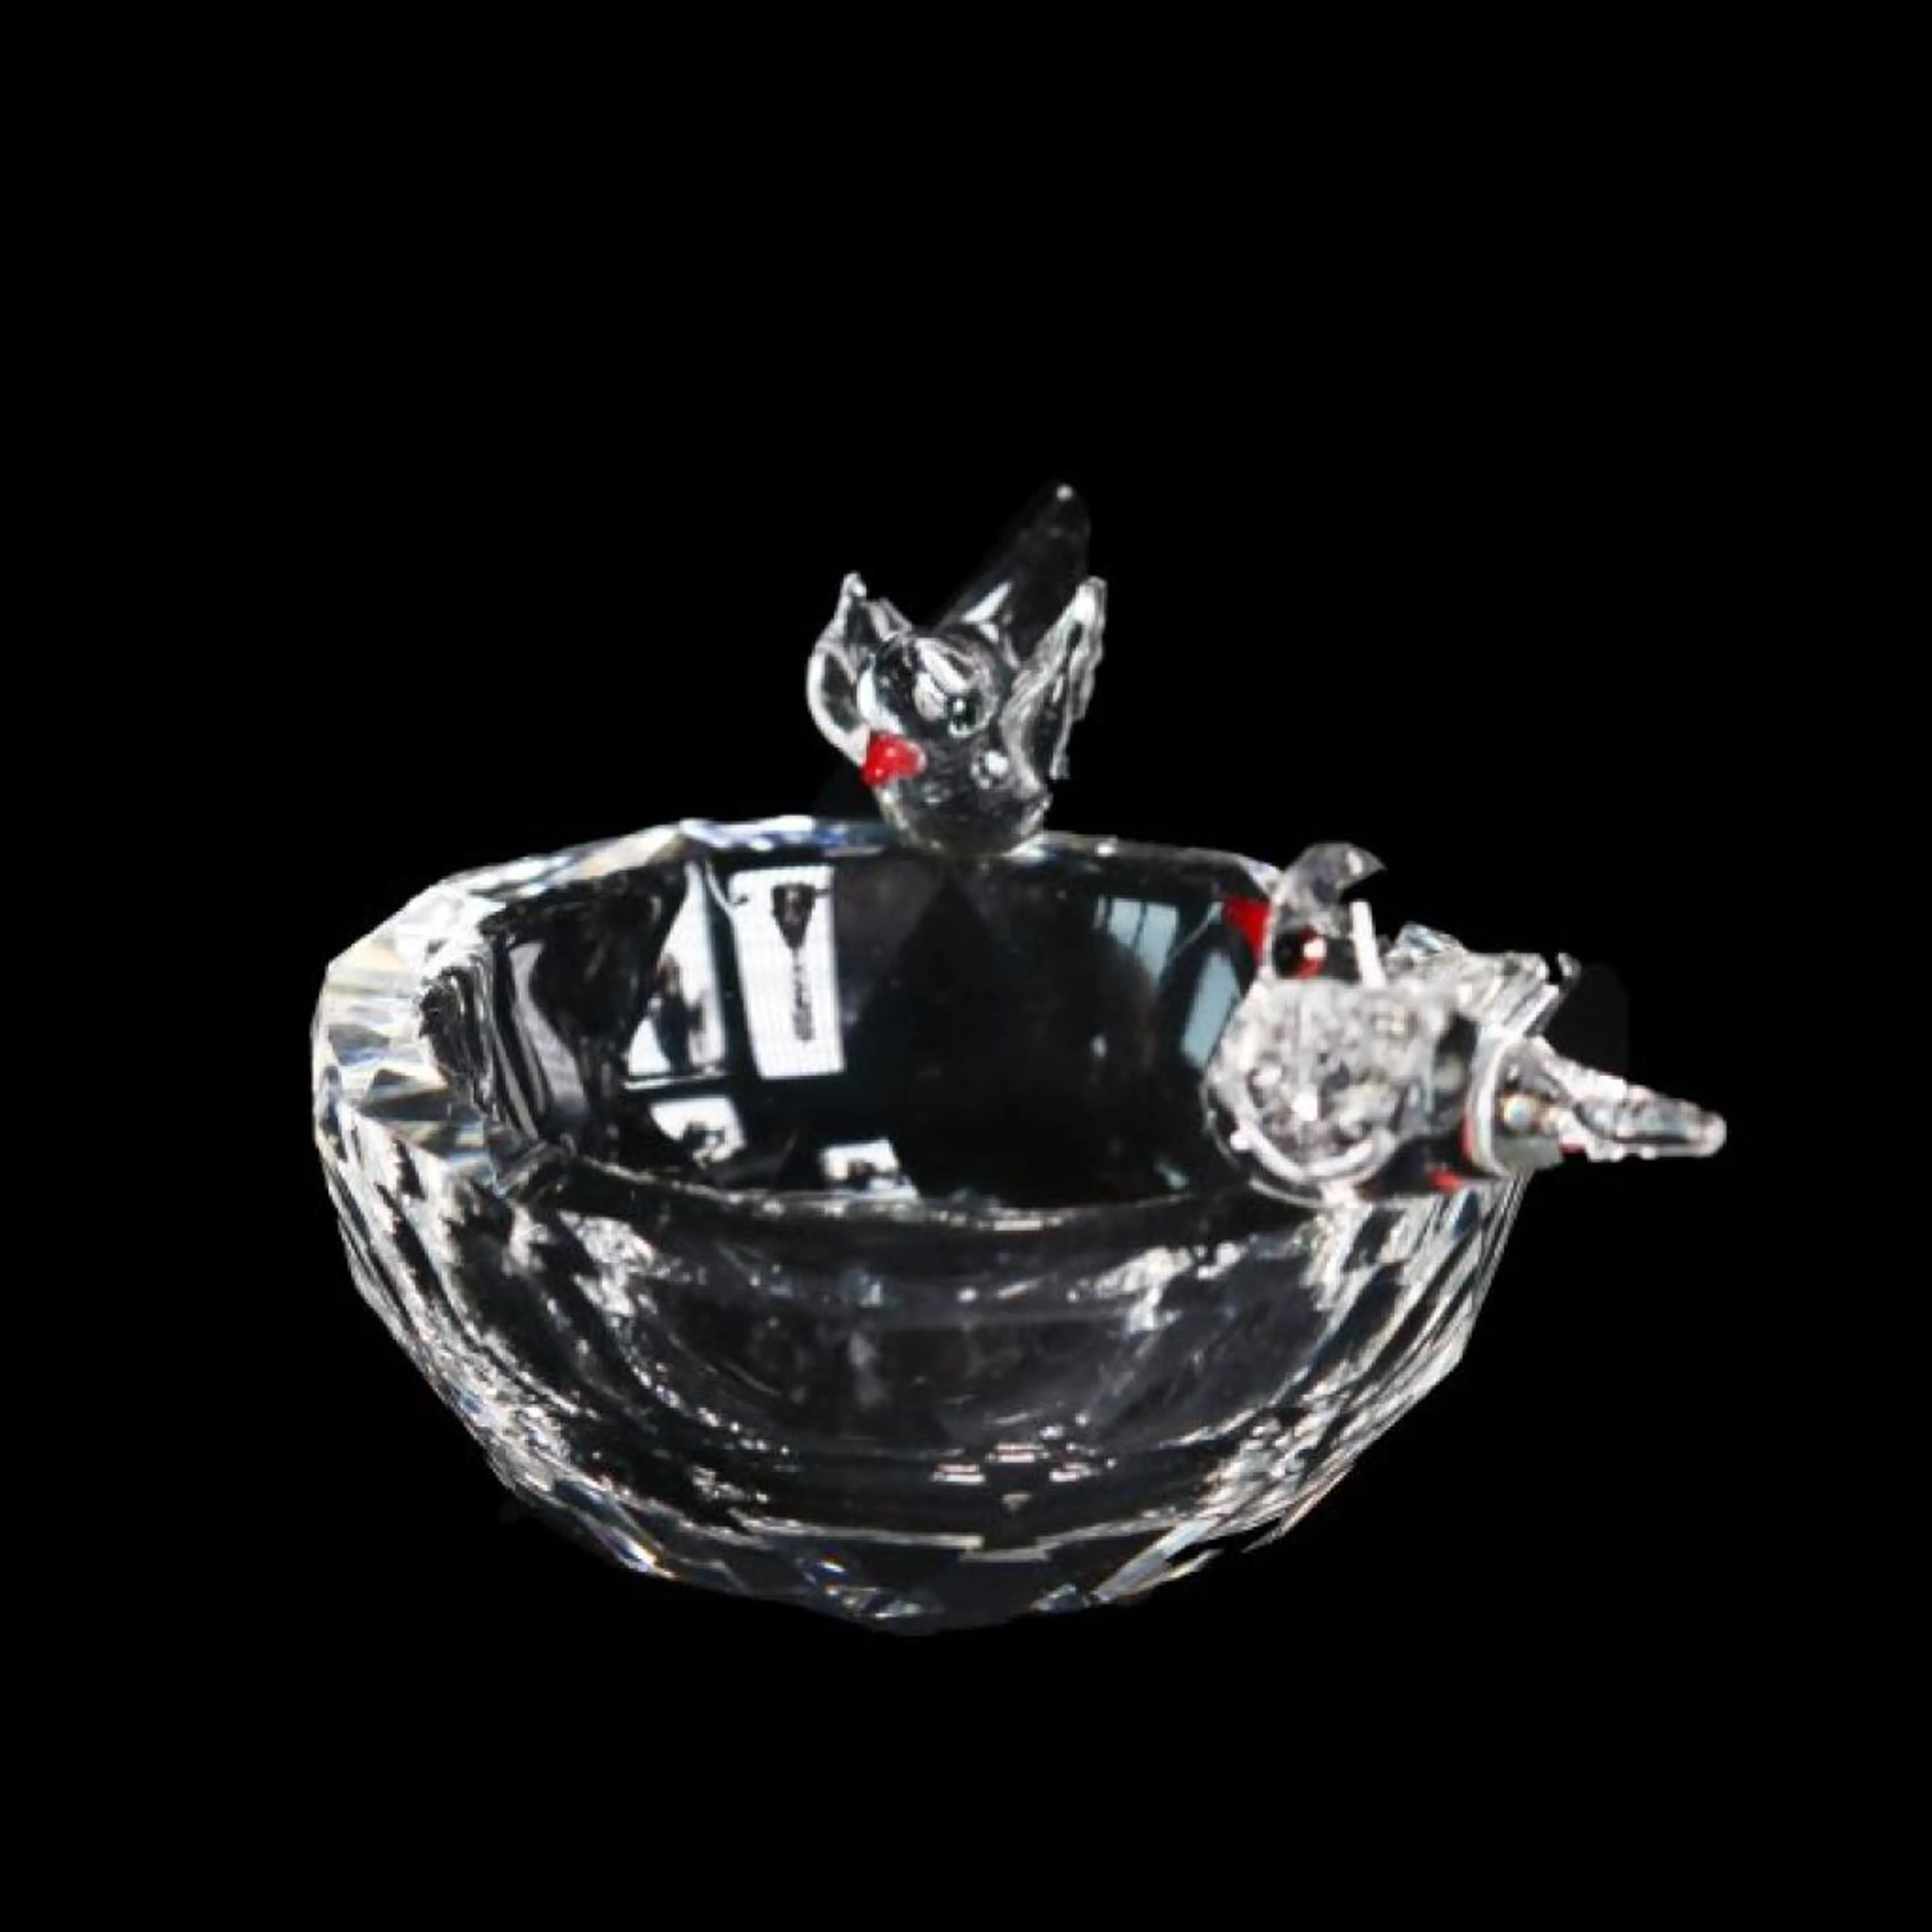 Swarovski Crystal Bowl With Bird